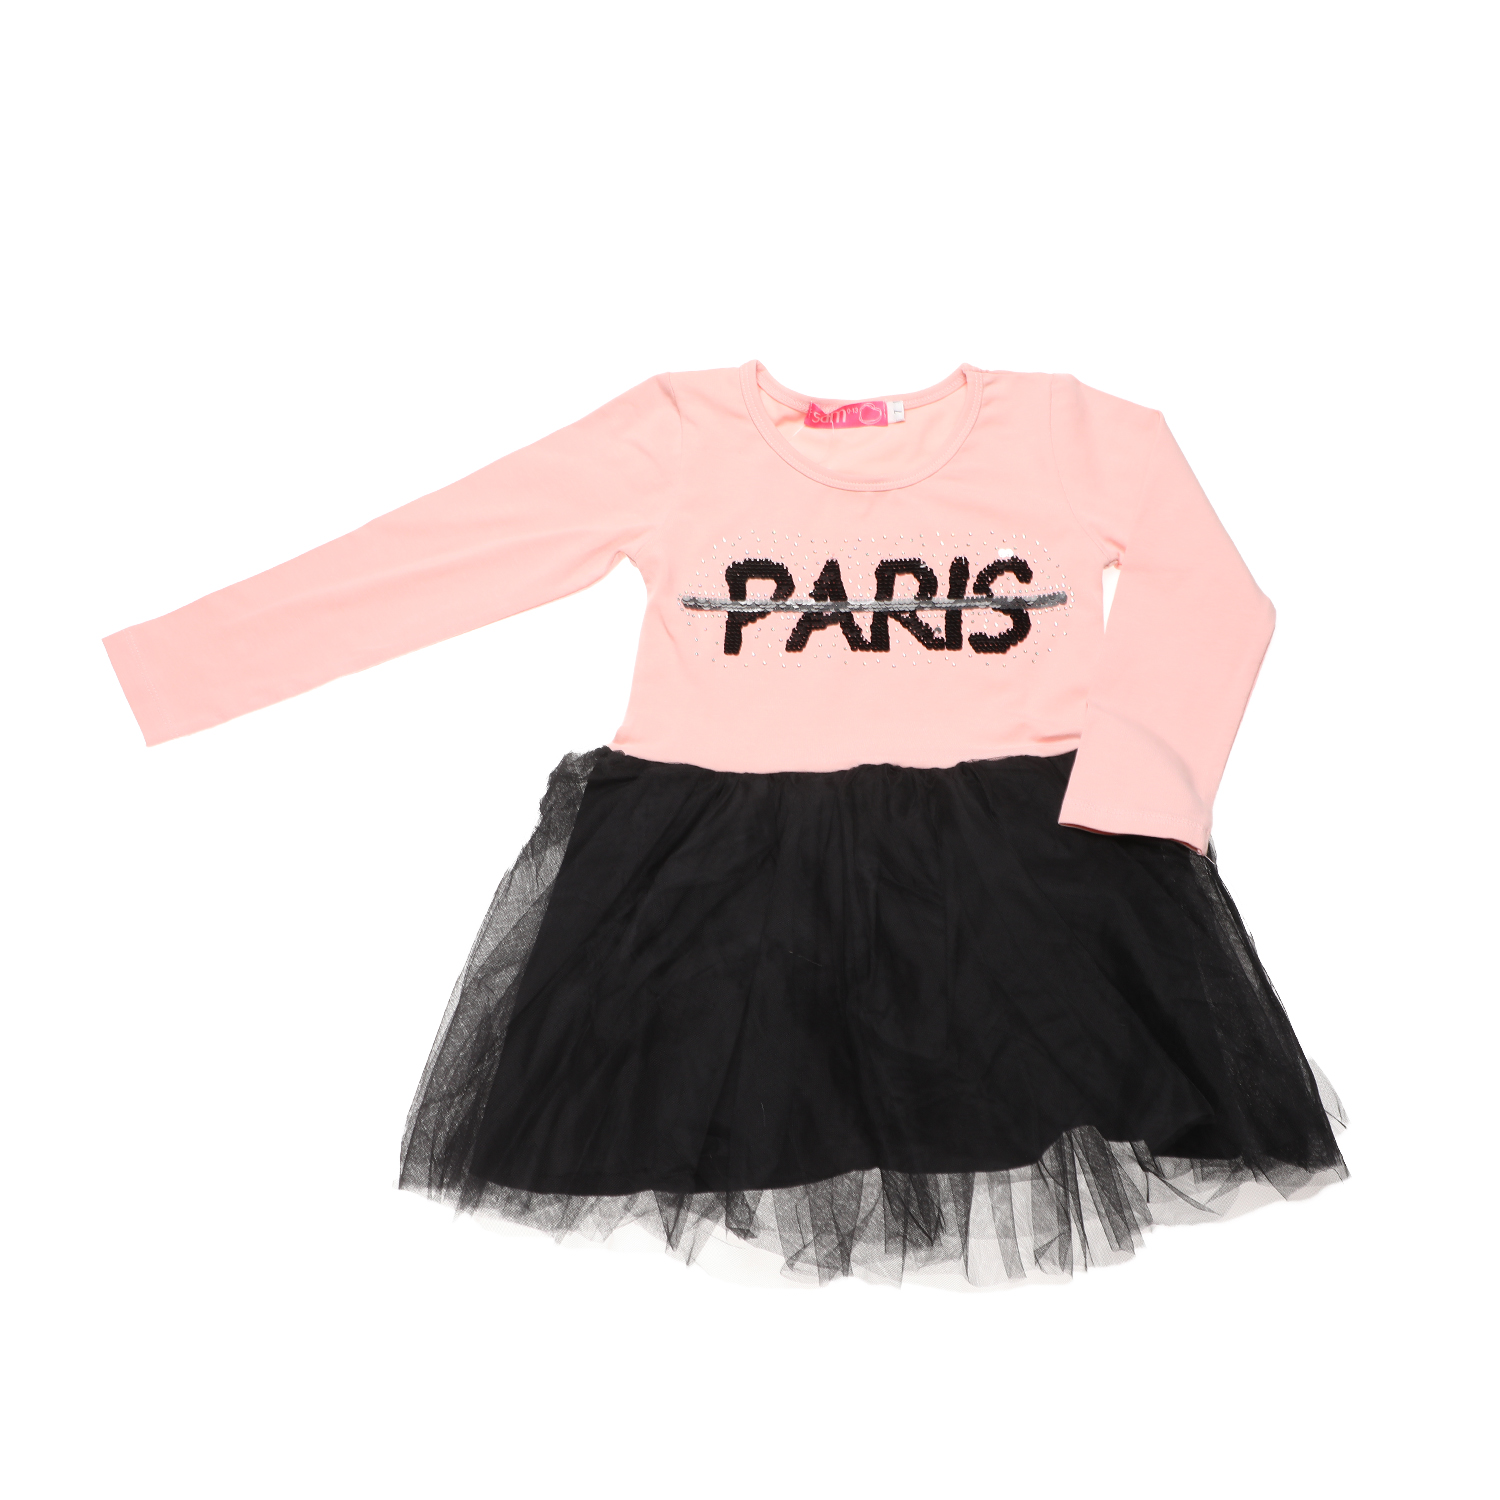 Παιδικά/Girls/Ρούχα/Φορέματα Μακρυμάνικα SAM 0-13 - Παιδικό φόρεμα SAM 0-13 PARIS ροζ μαύρο